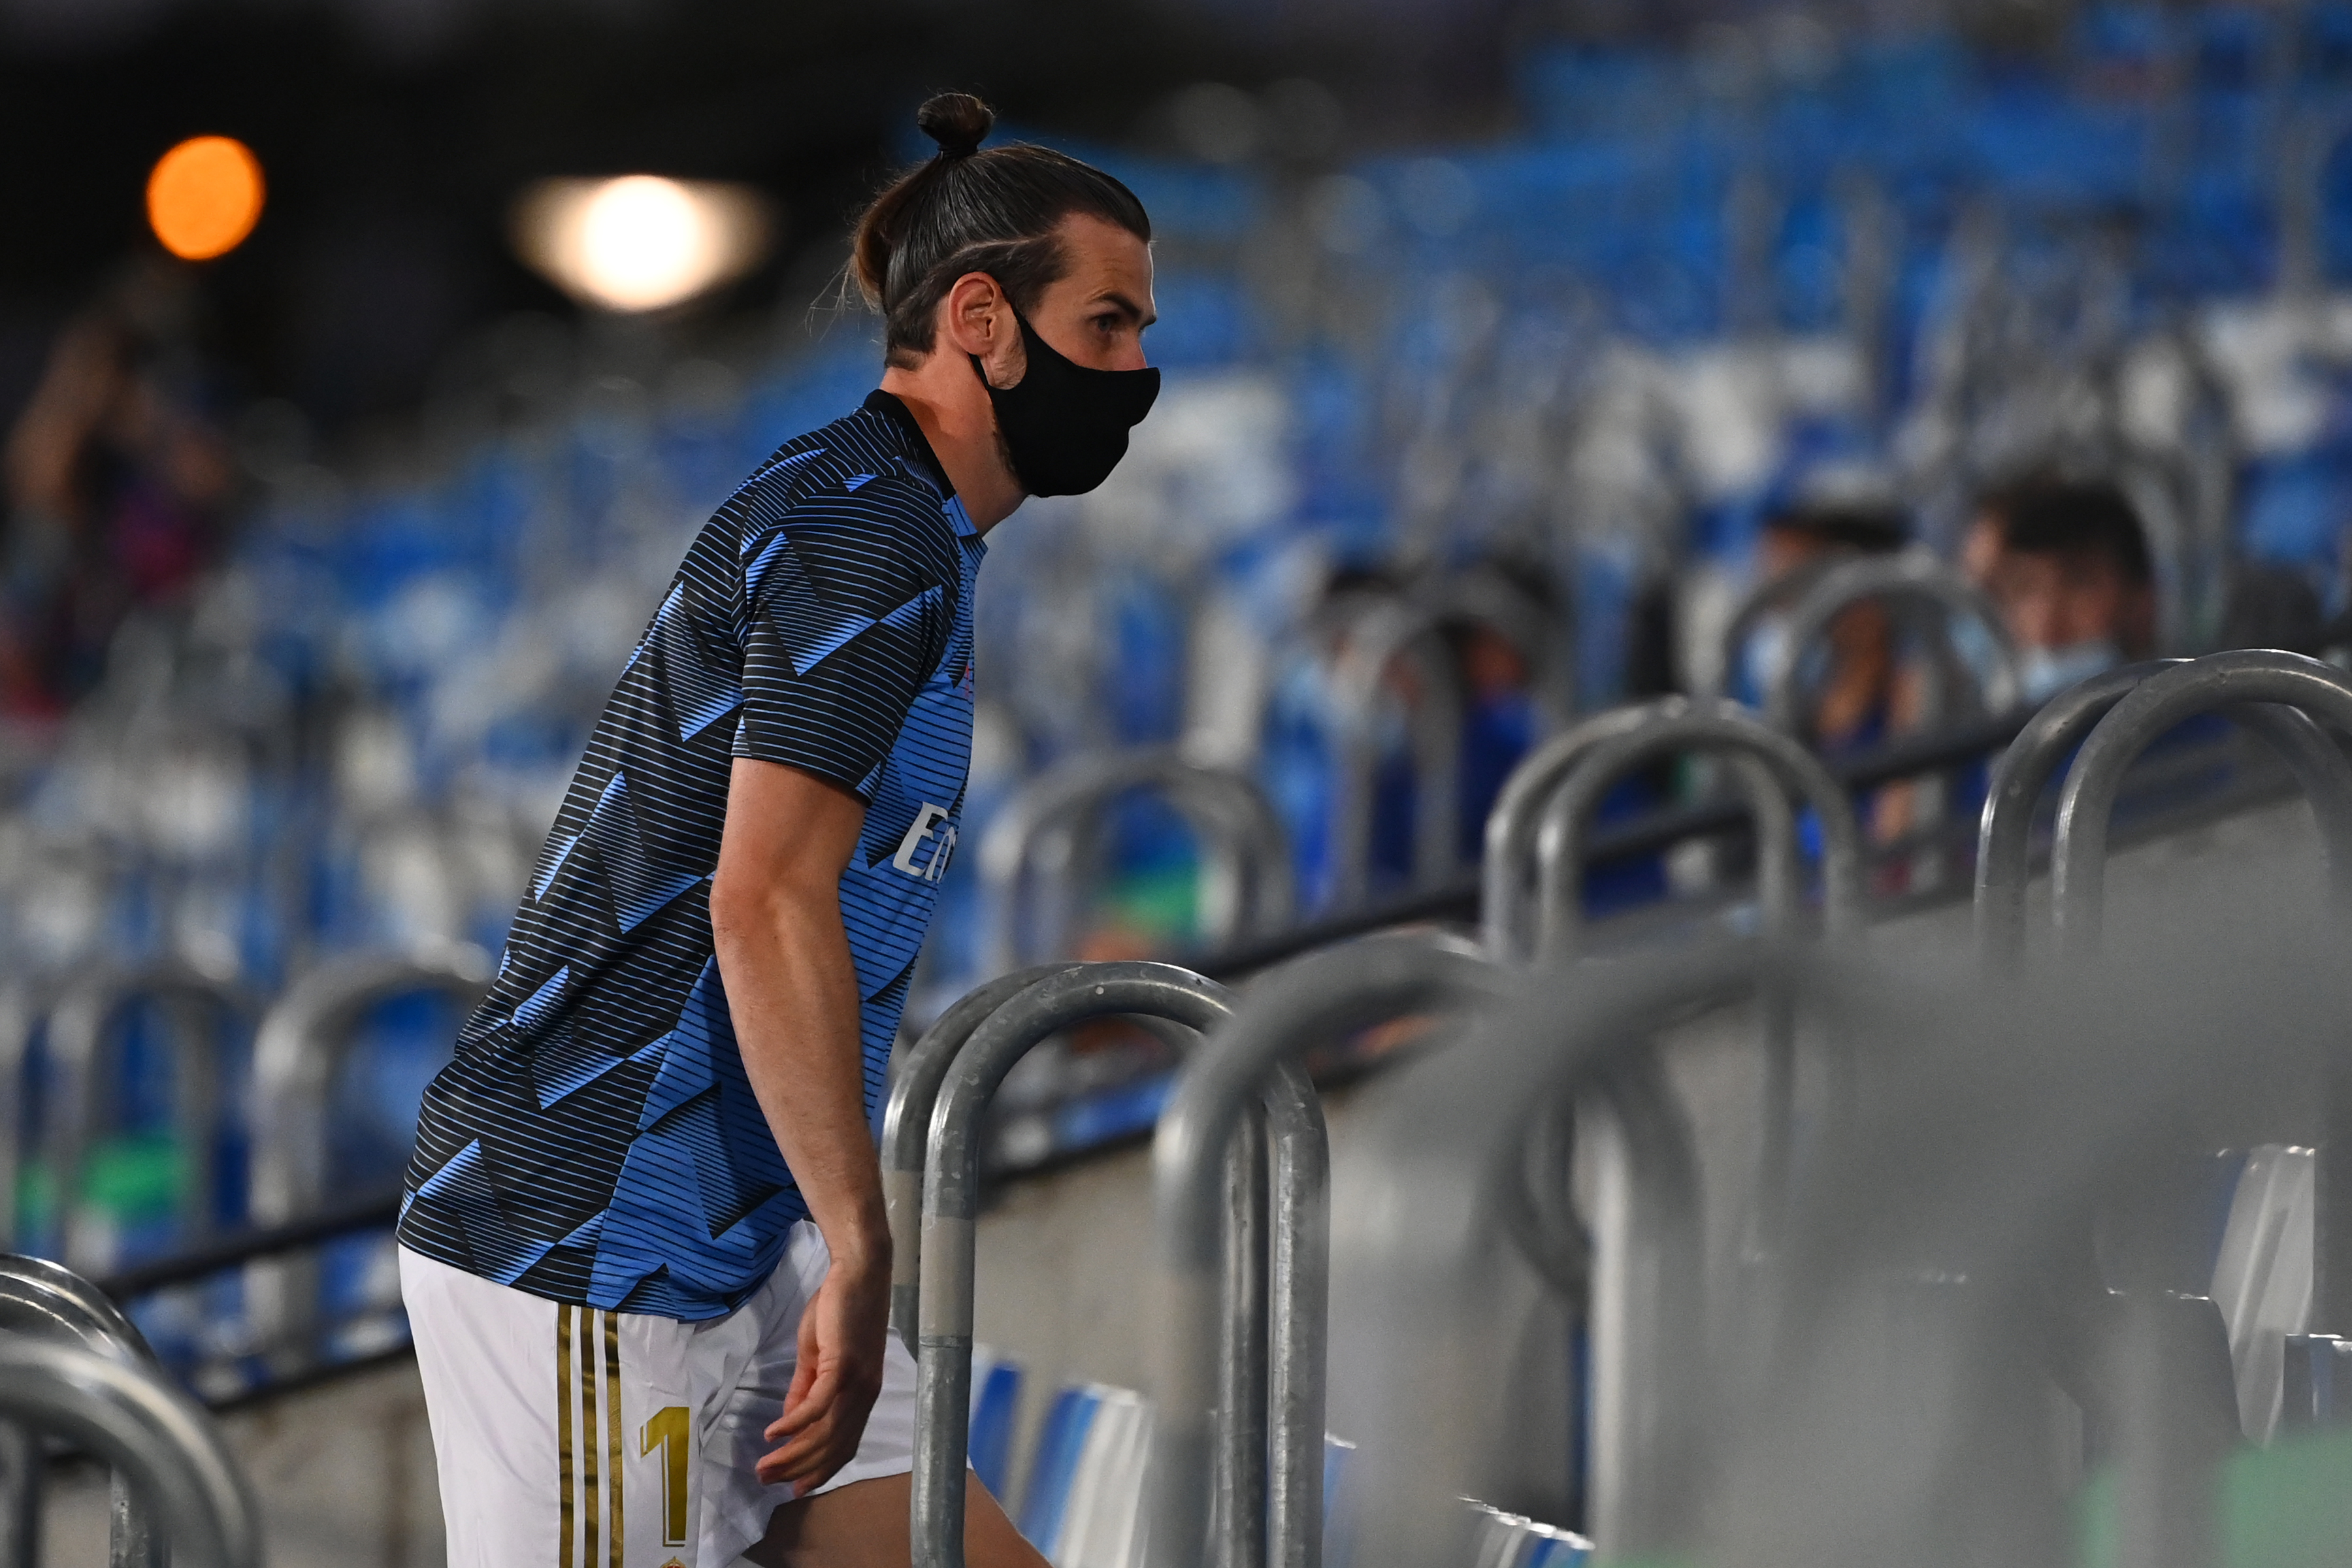 Gareth Bale pasó de dormirse en pleno partido a jugar con papel higiénico (FOTO)